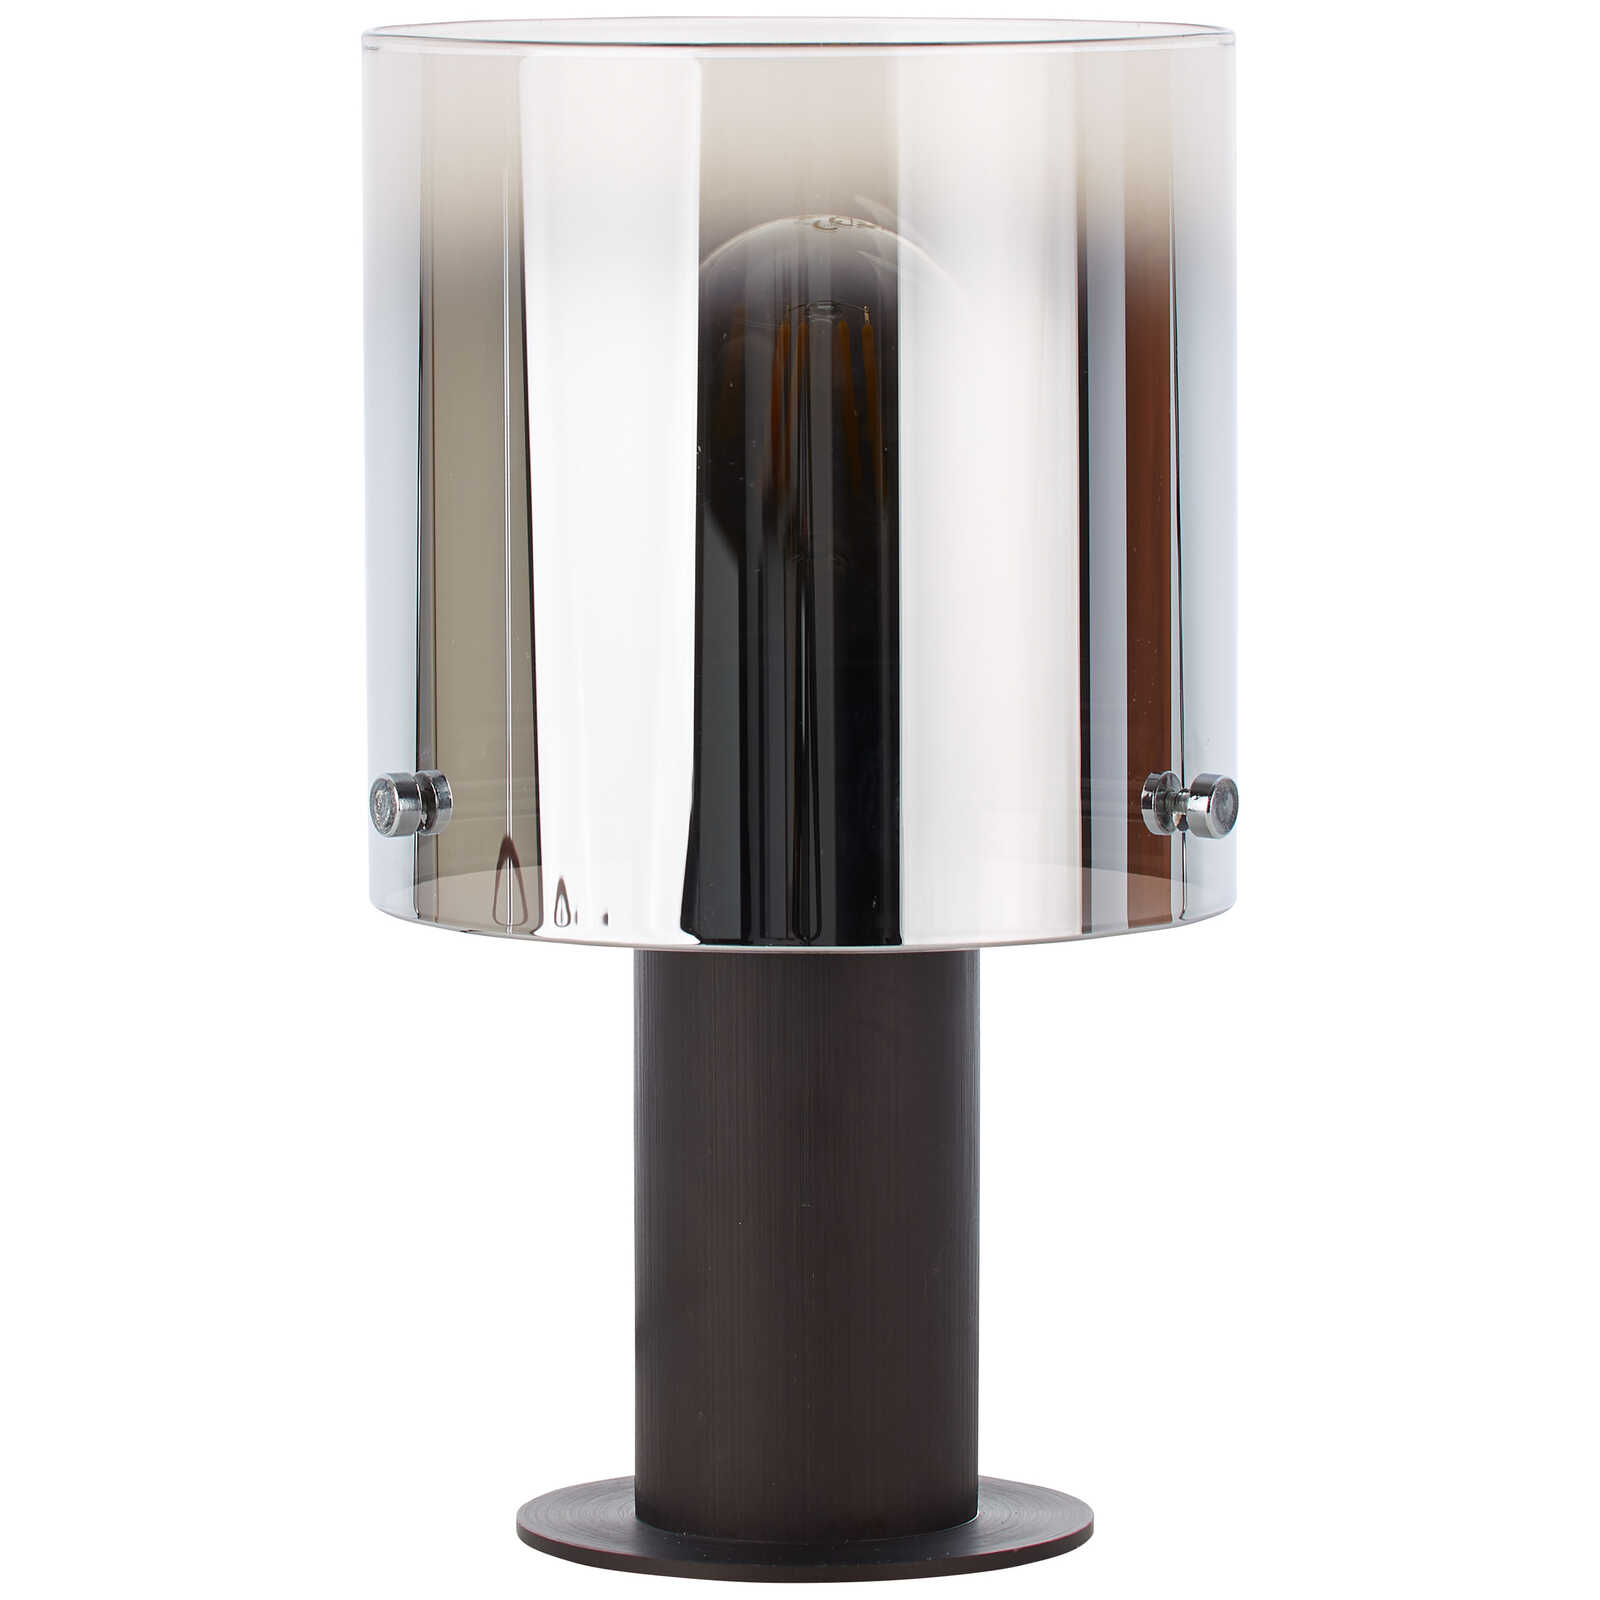             Glass table lamp - Benett 1 - Brown
        